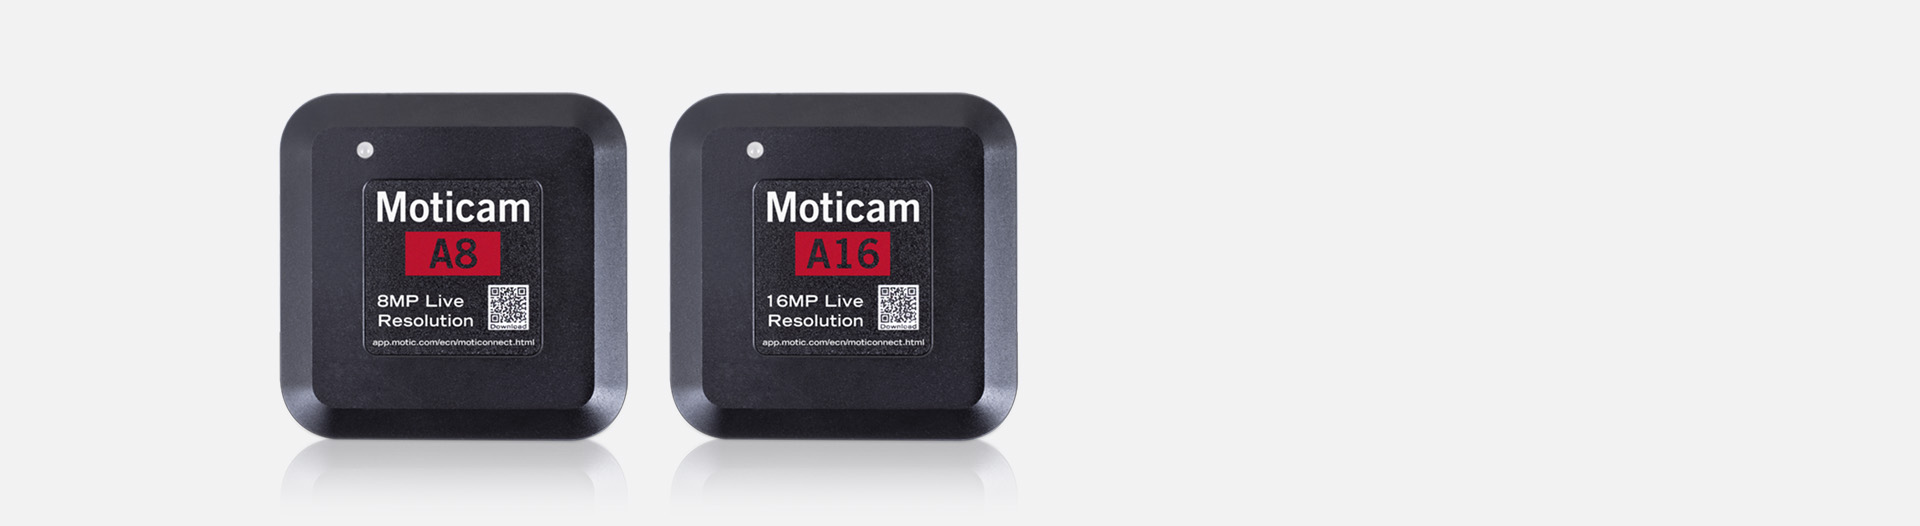 Moticam A8 A16 USB Starter